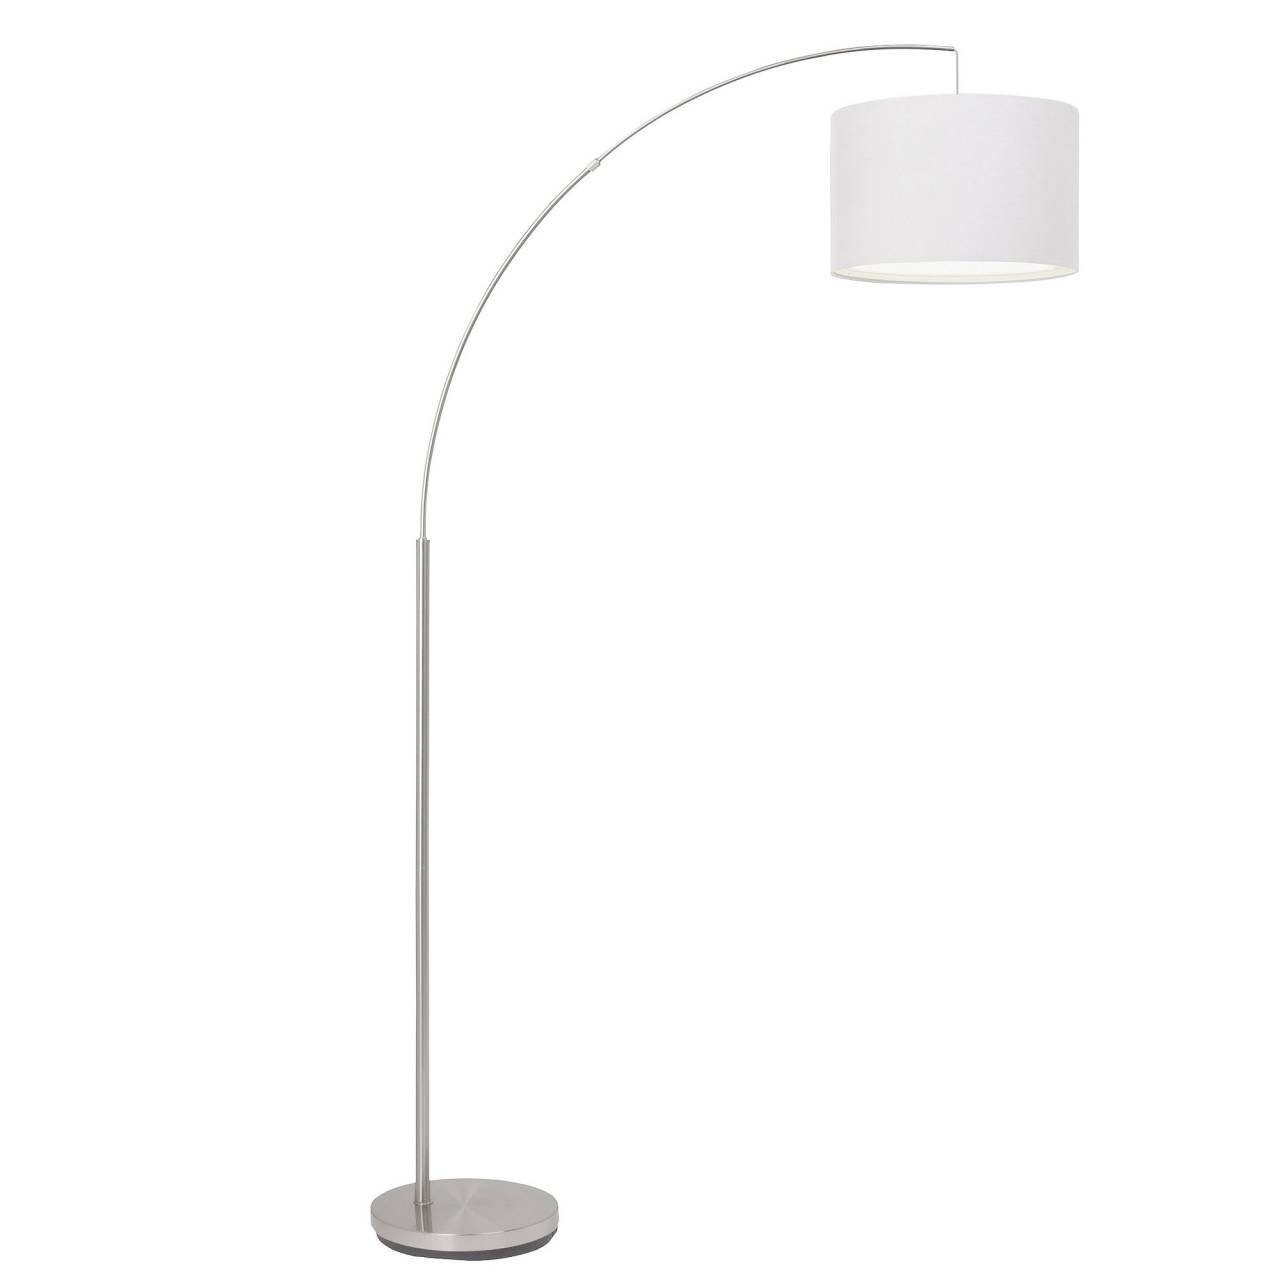 Brilliant Stehlampe Clarie, Lampe eisen/weiß 1x gee Bogenstandleuchte Clarie 60W, E27, 1,8m A60